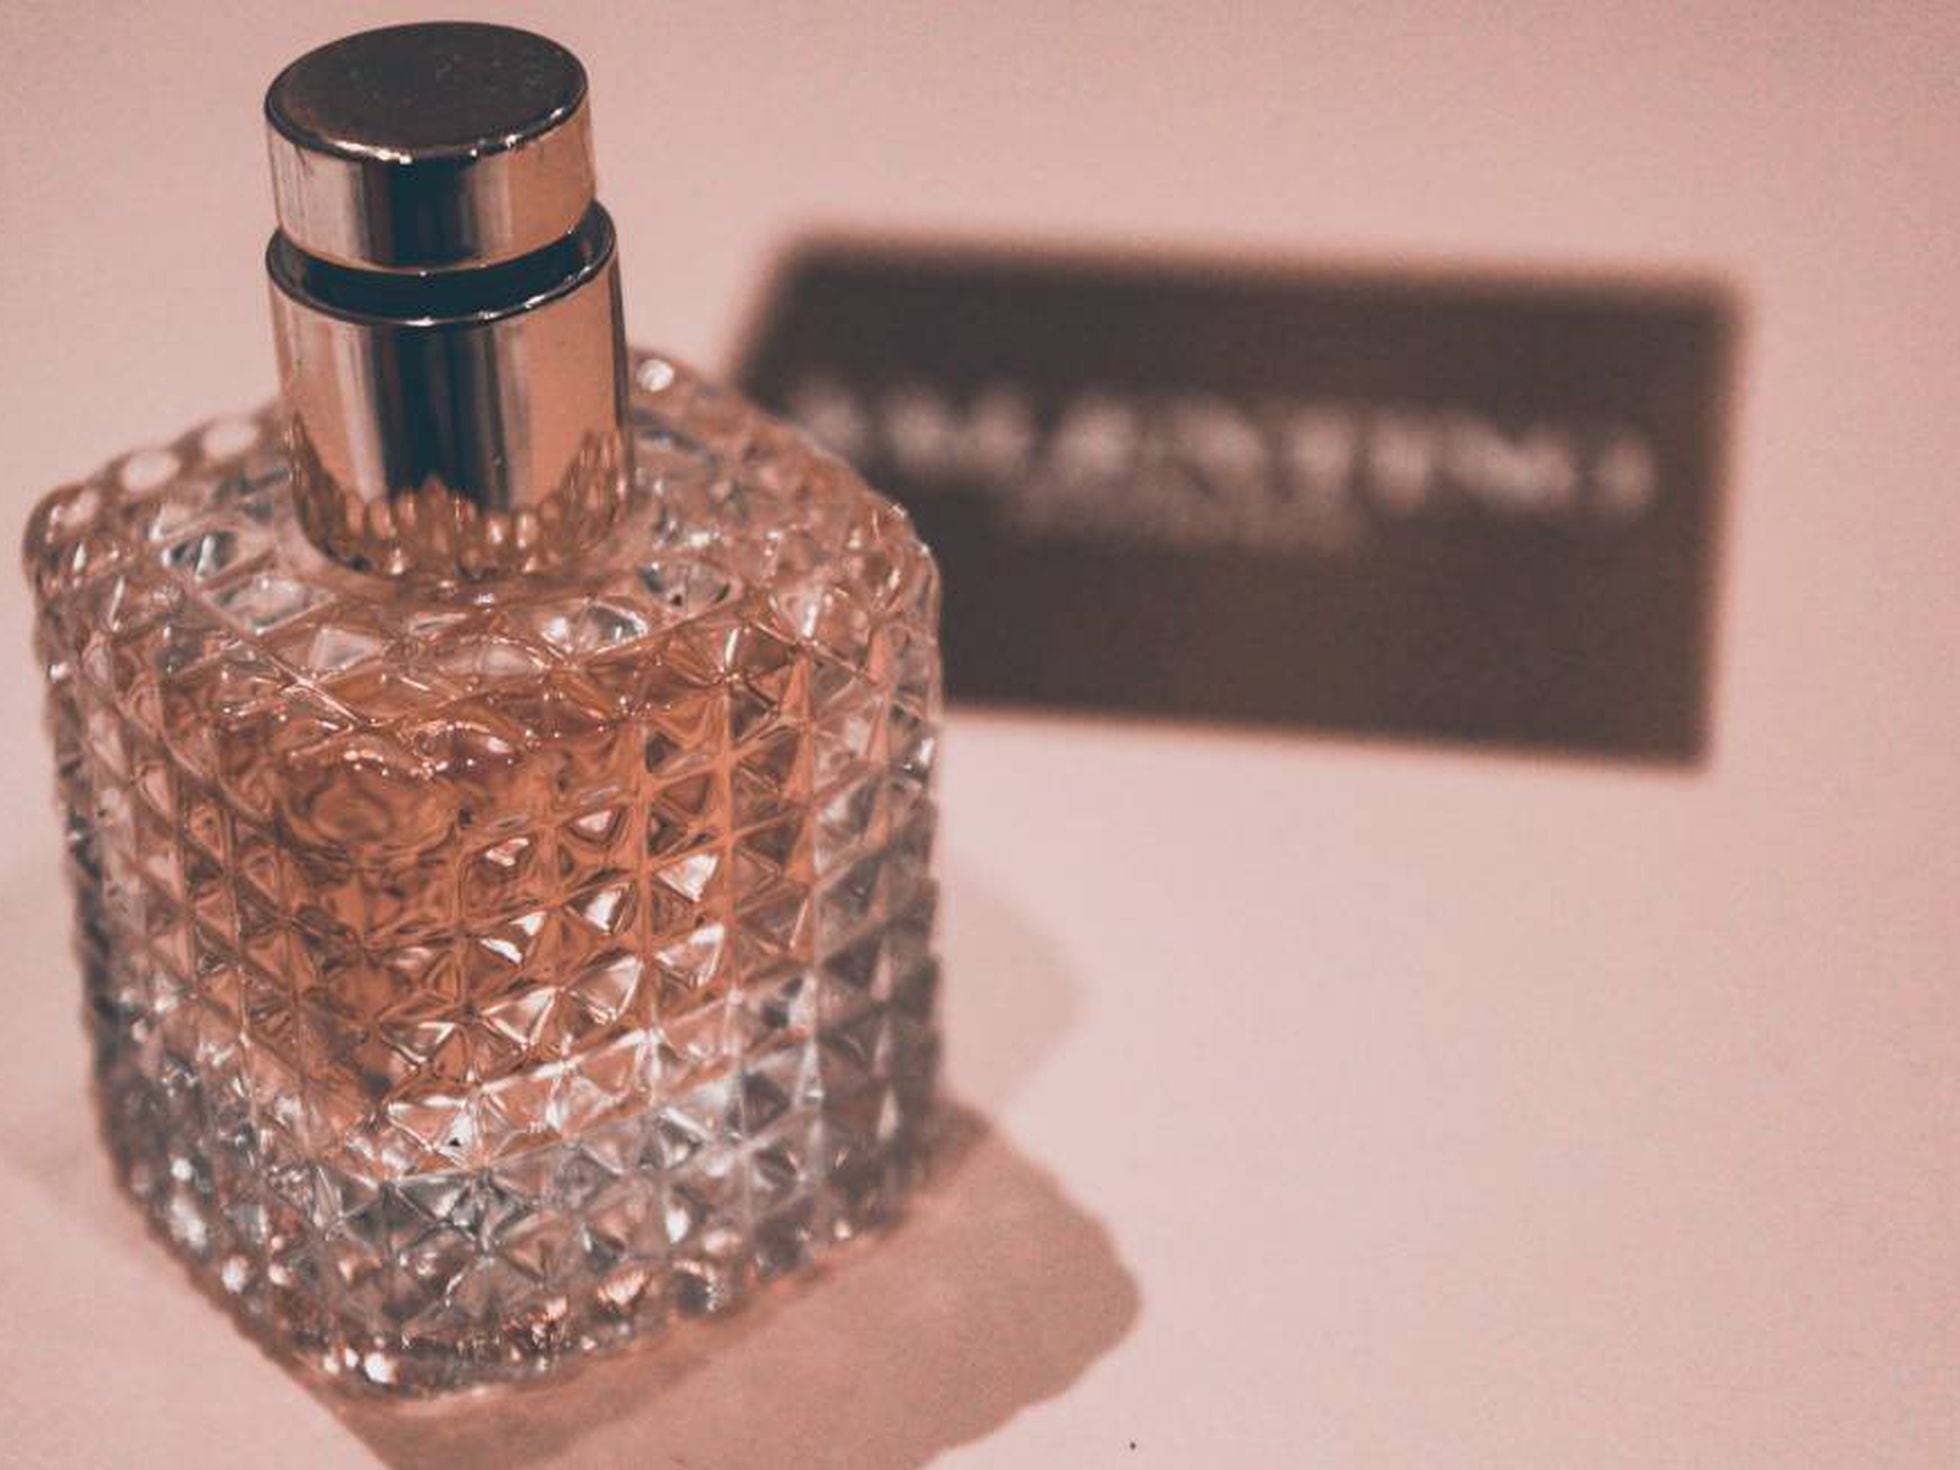 perfumes de mujer vendidos 'online' | Escaparate PAÍS